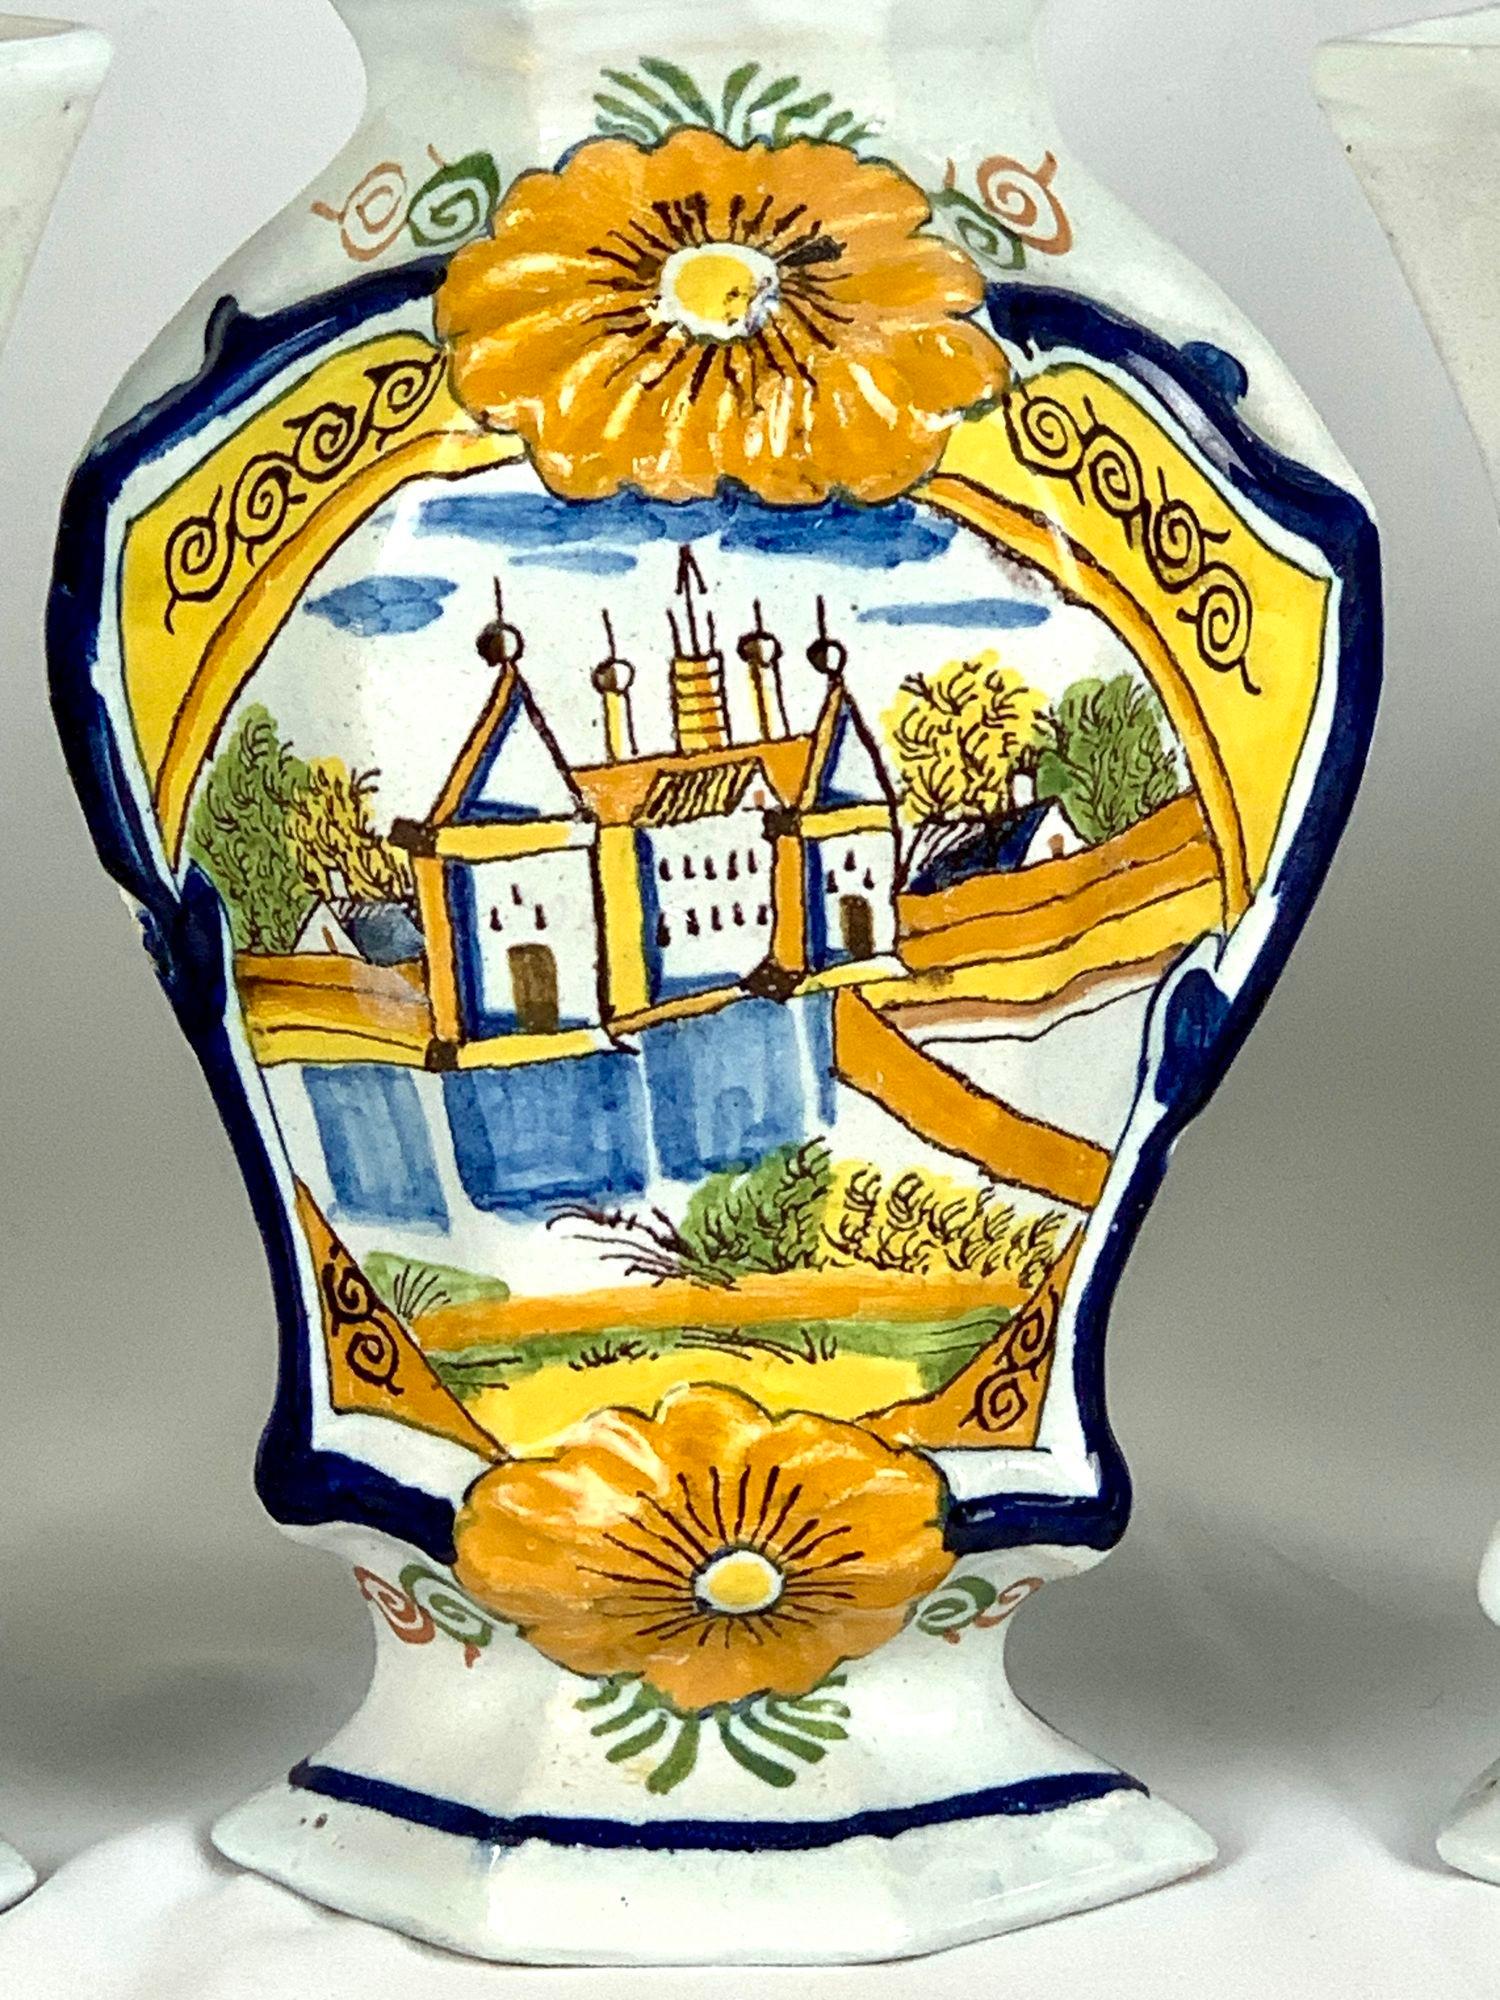 Cette garniture de manteau de Delft hollandaise comprend cinq pièces : trois vases à couvercle et une paire de vases en forme de flûte.
Il a été fabriqué aux Pays-Bas vers 1780.
Le design présente une scène naïve peinte à la main d'un château